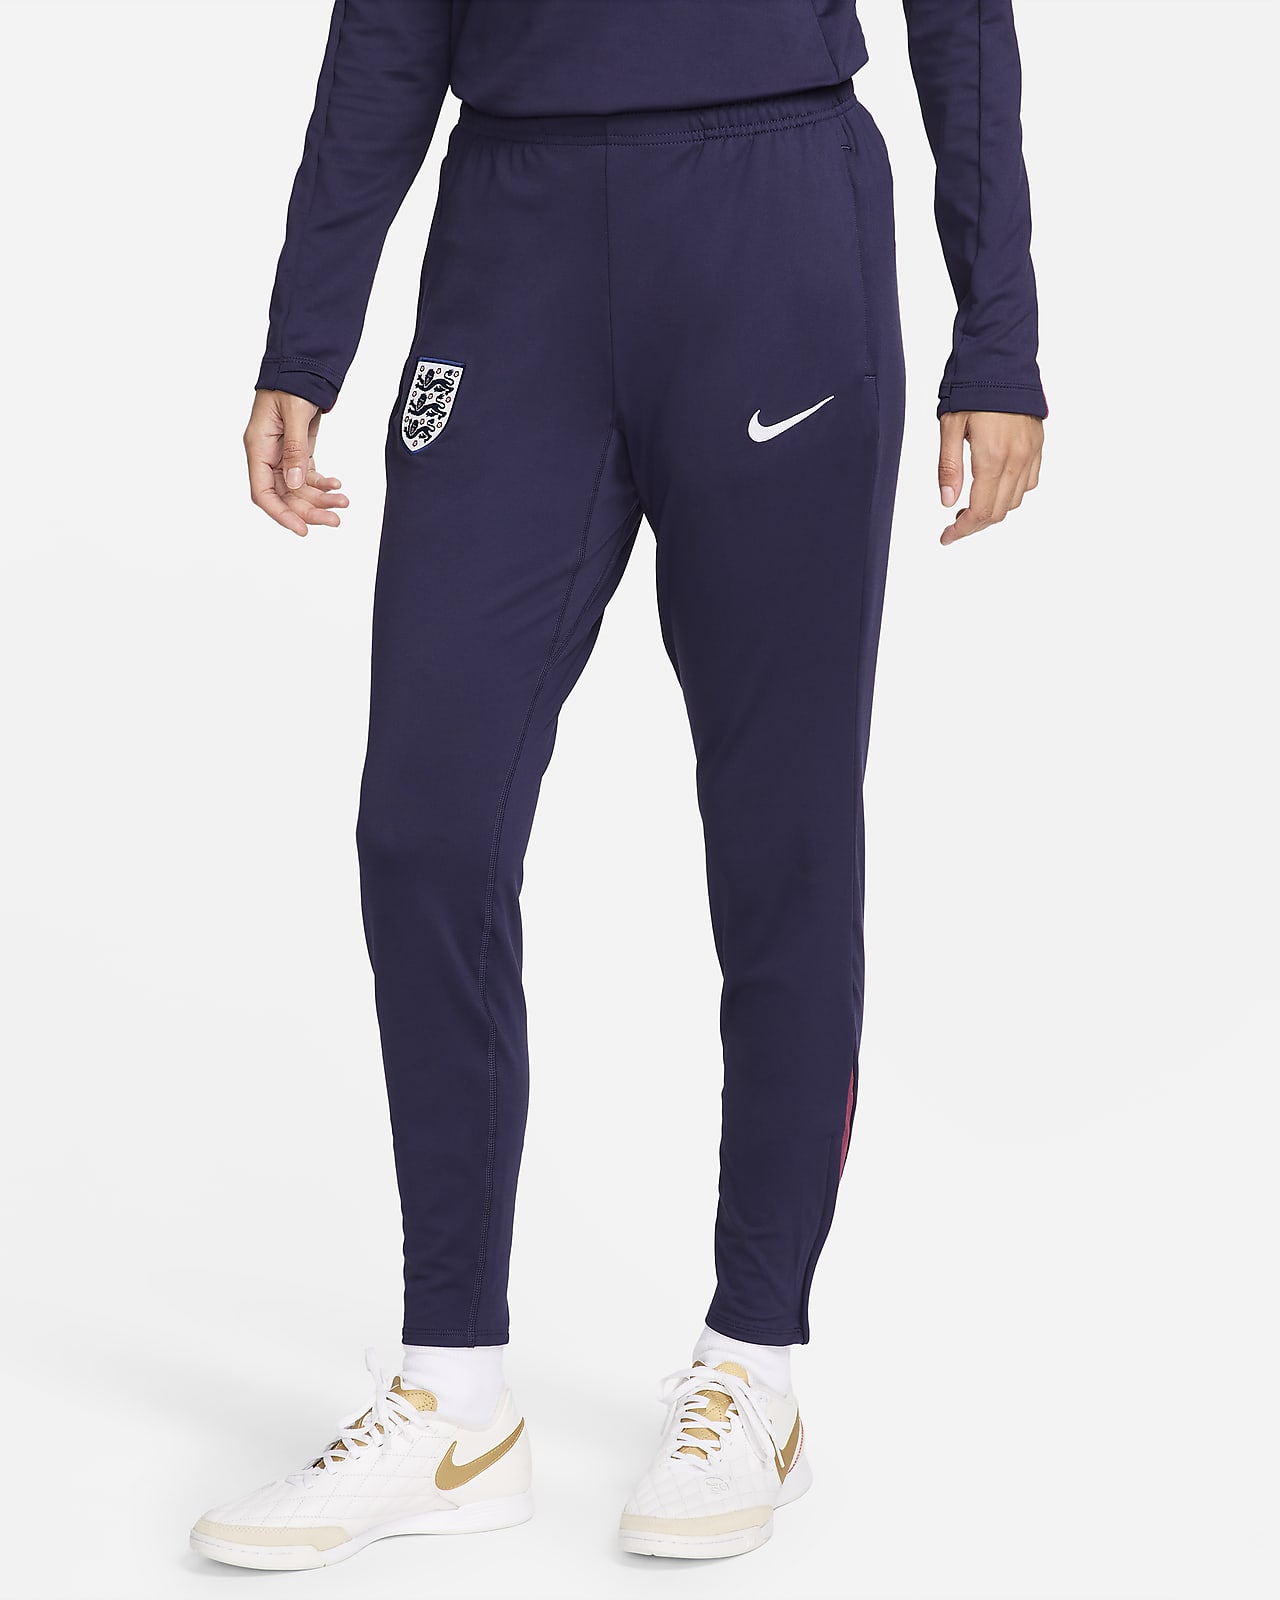 Engeland Strike Nike Dri-FIT knit voetbalbroek voor dames